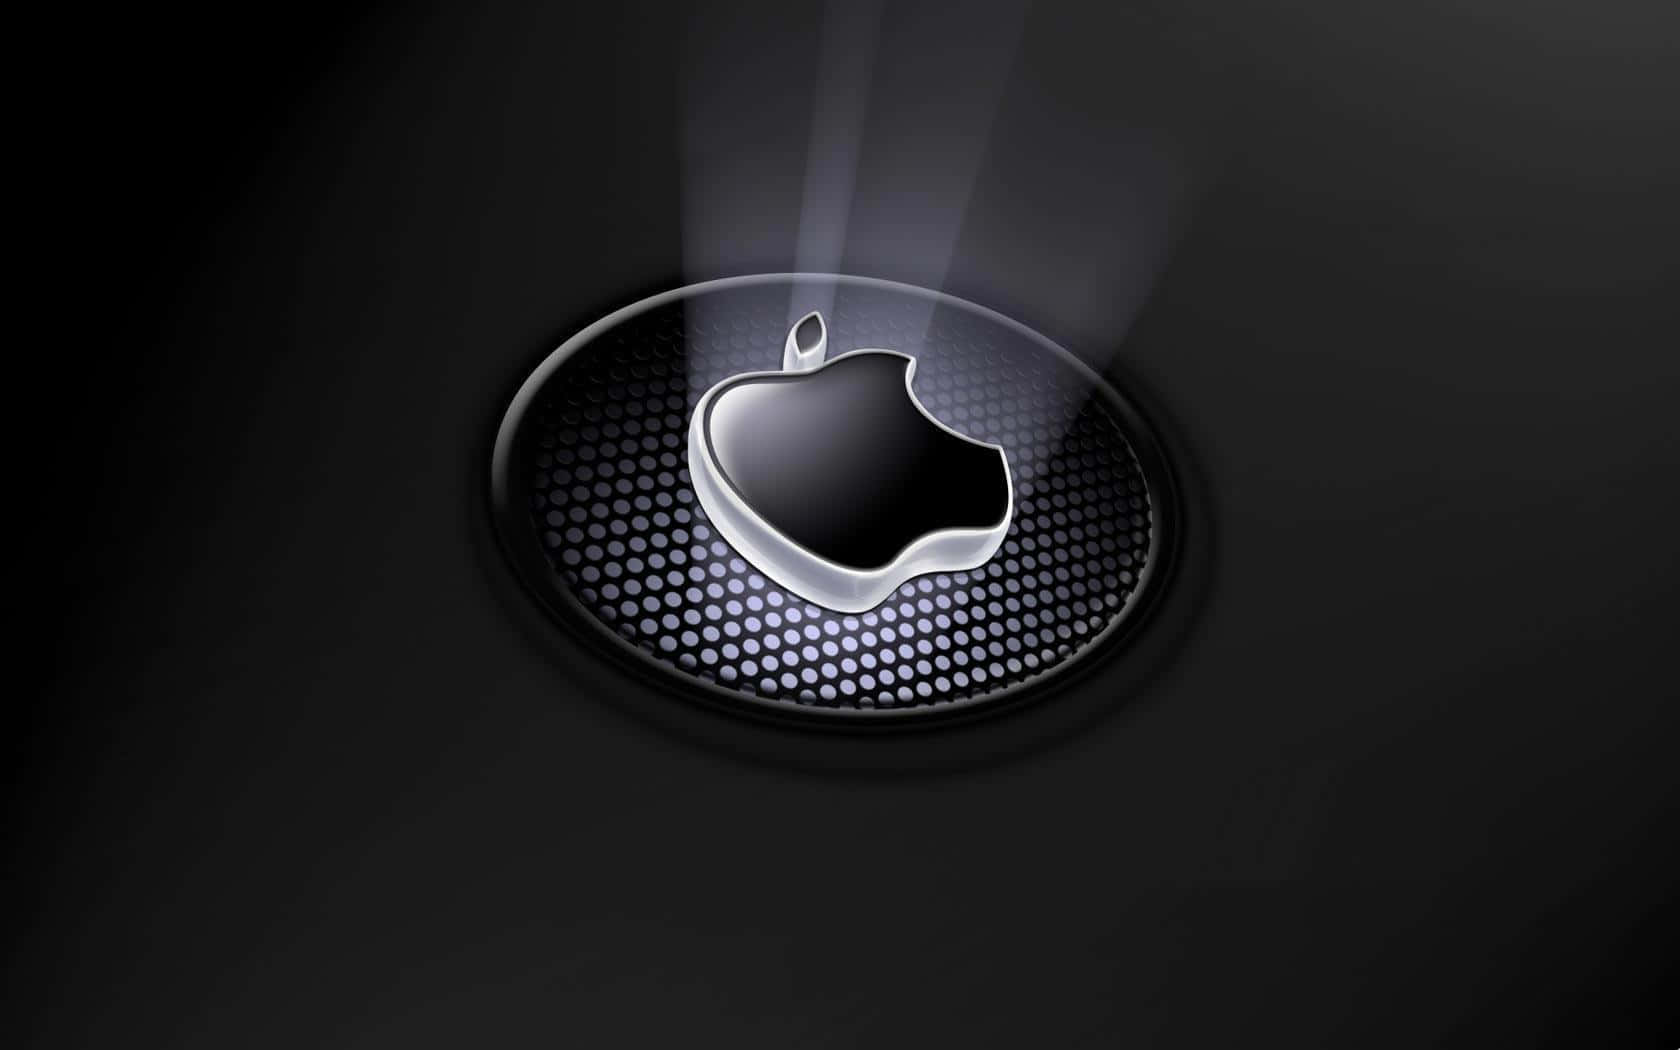 Migliorlogo Di Apple In Bianco E Nero In Arte 3d. Sfondo